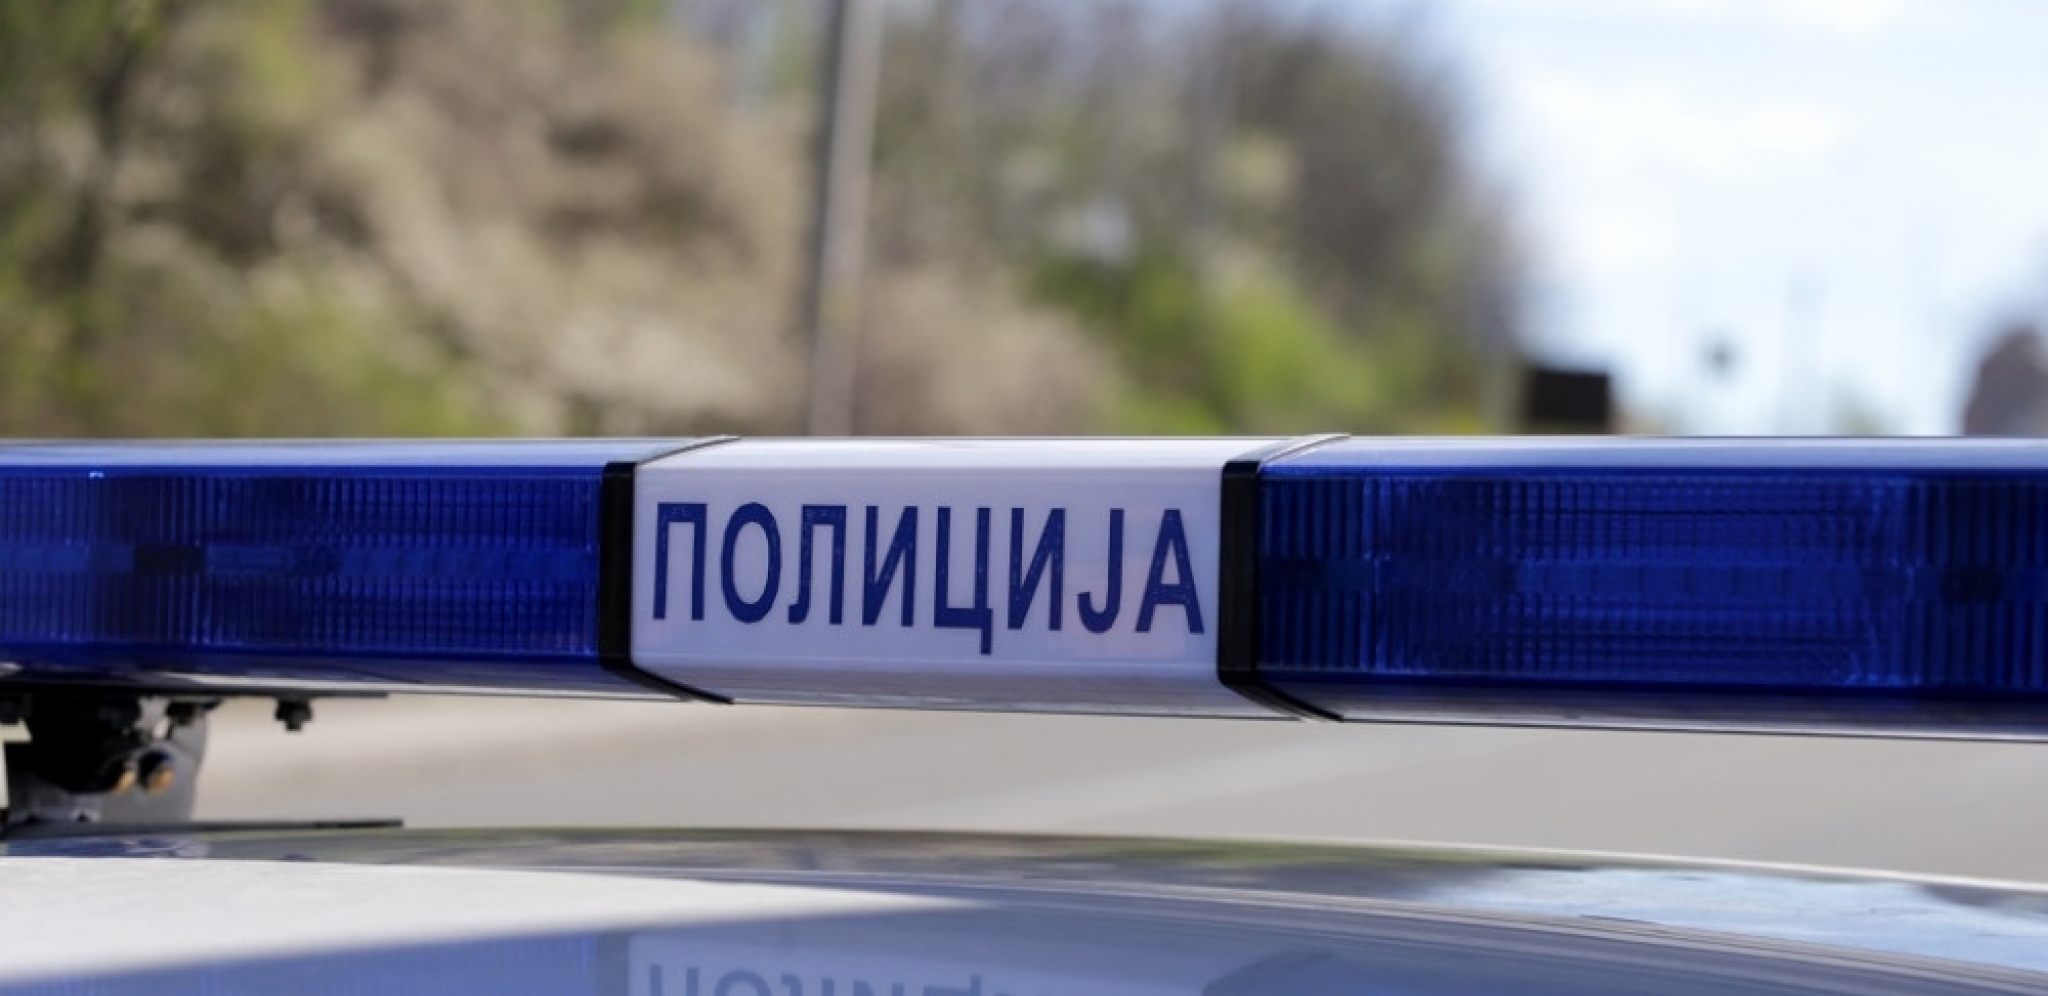 ZA OPERACIJU TRAŽIO 1.000 EVRA Hapšenje u Beogradu, uticao na doktora zaposlenog u Kliničkom centru Srbije